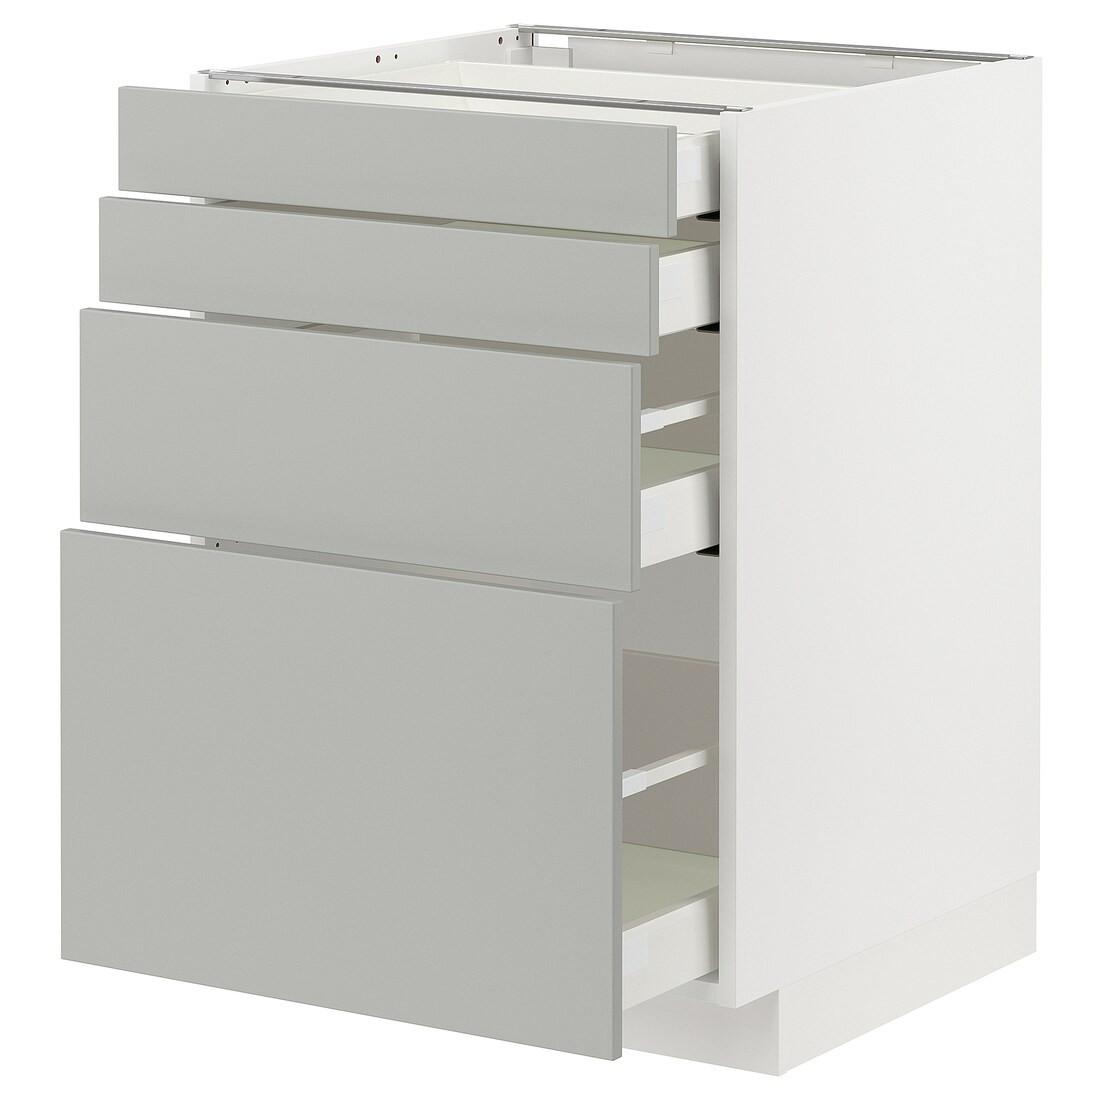 METOD / MAXIMERA Напольный шкаф 4 ящика, белый / Хавсторп светло-серый, 60x60 см